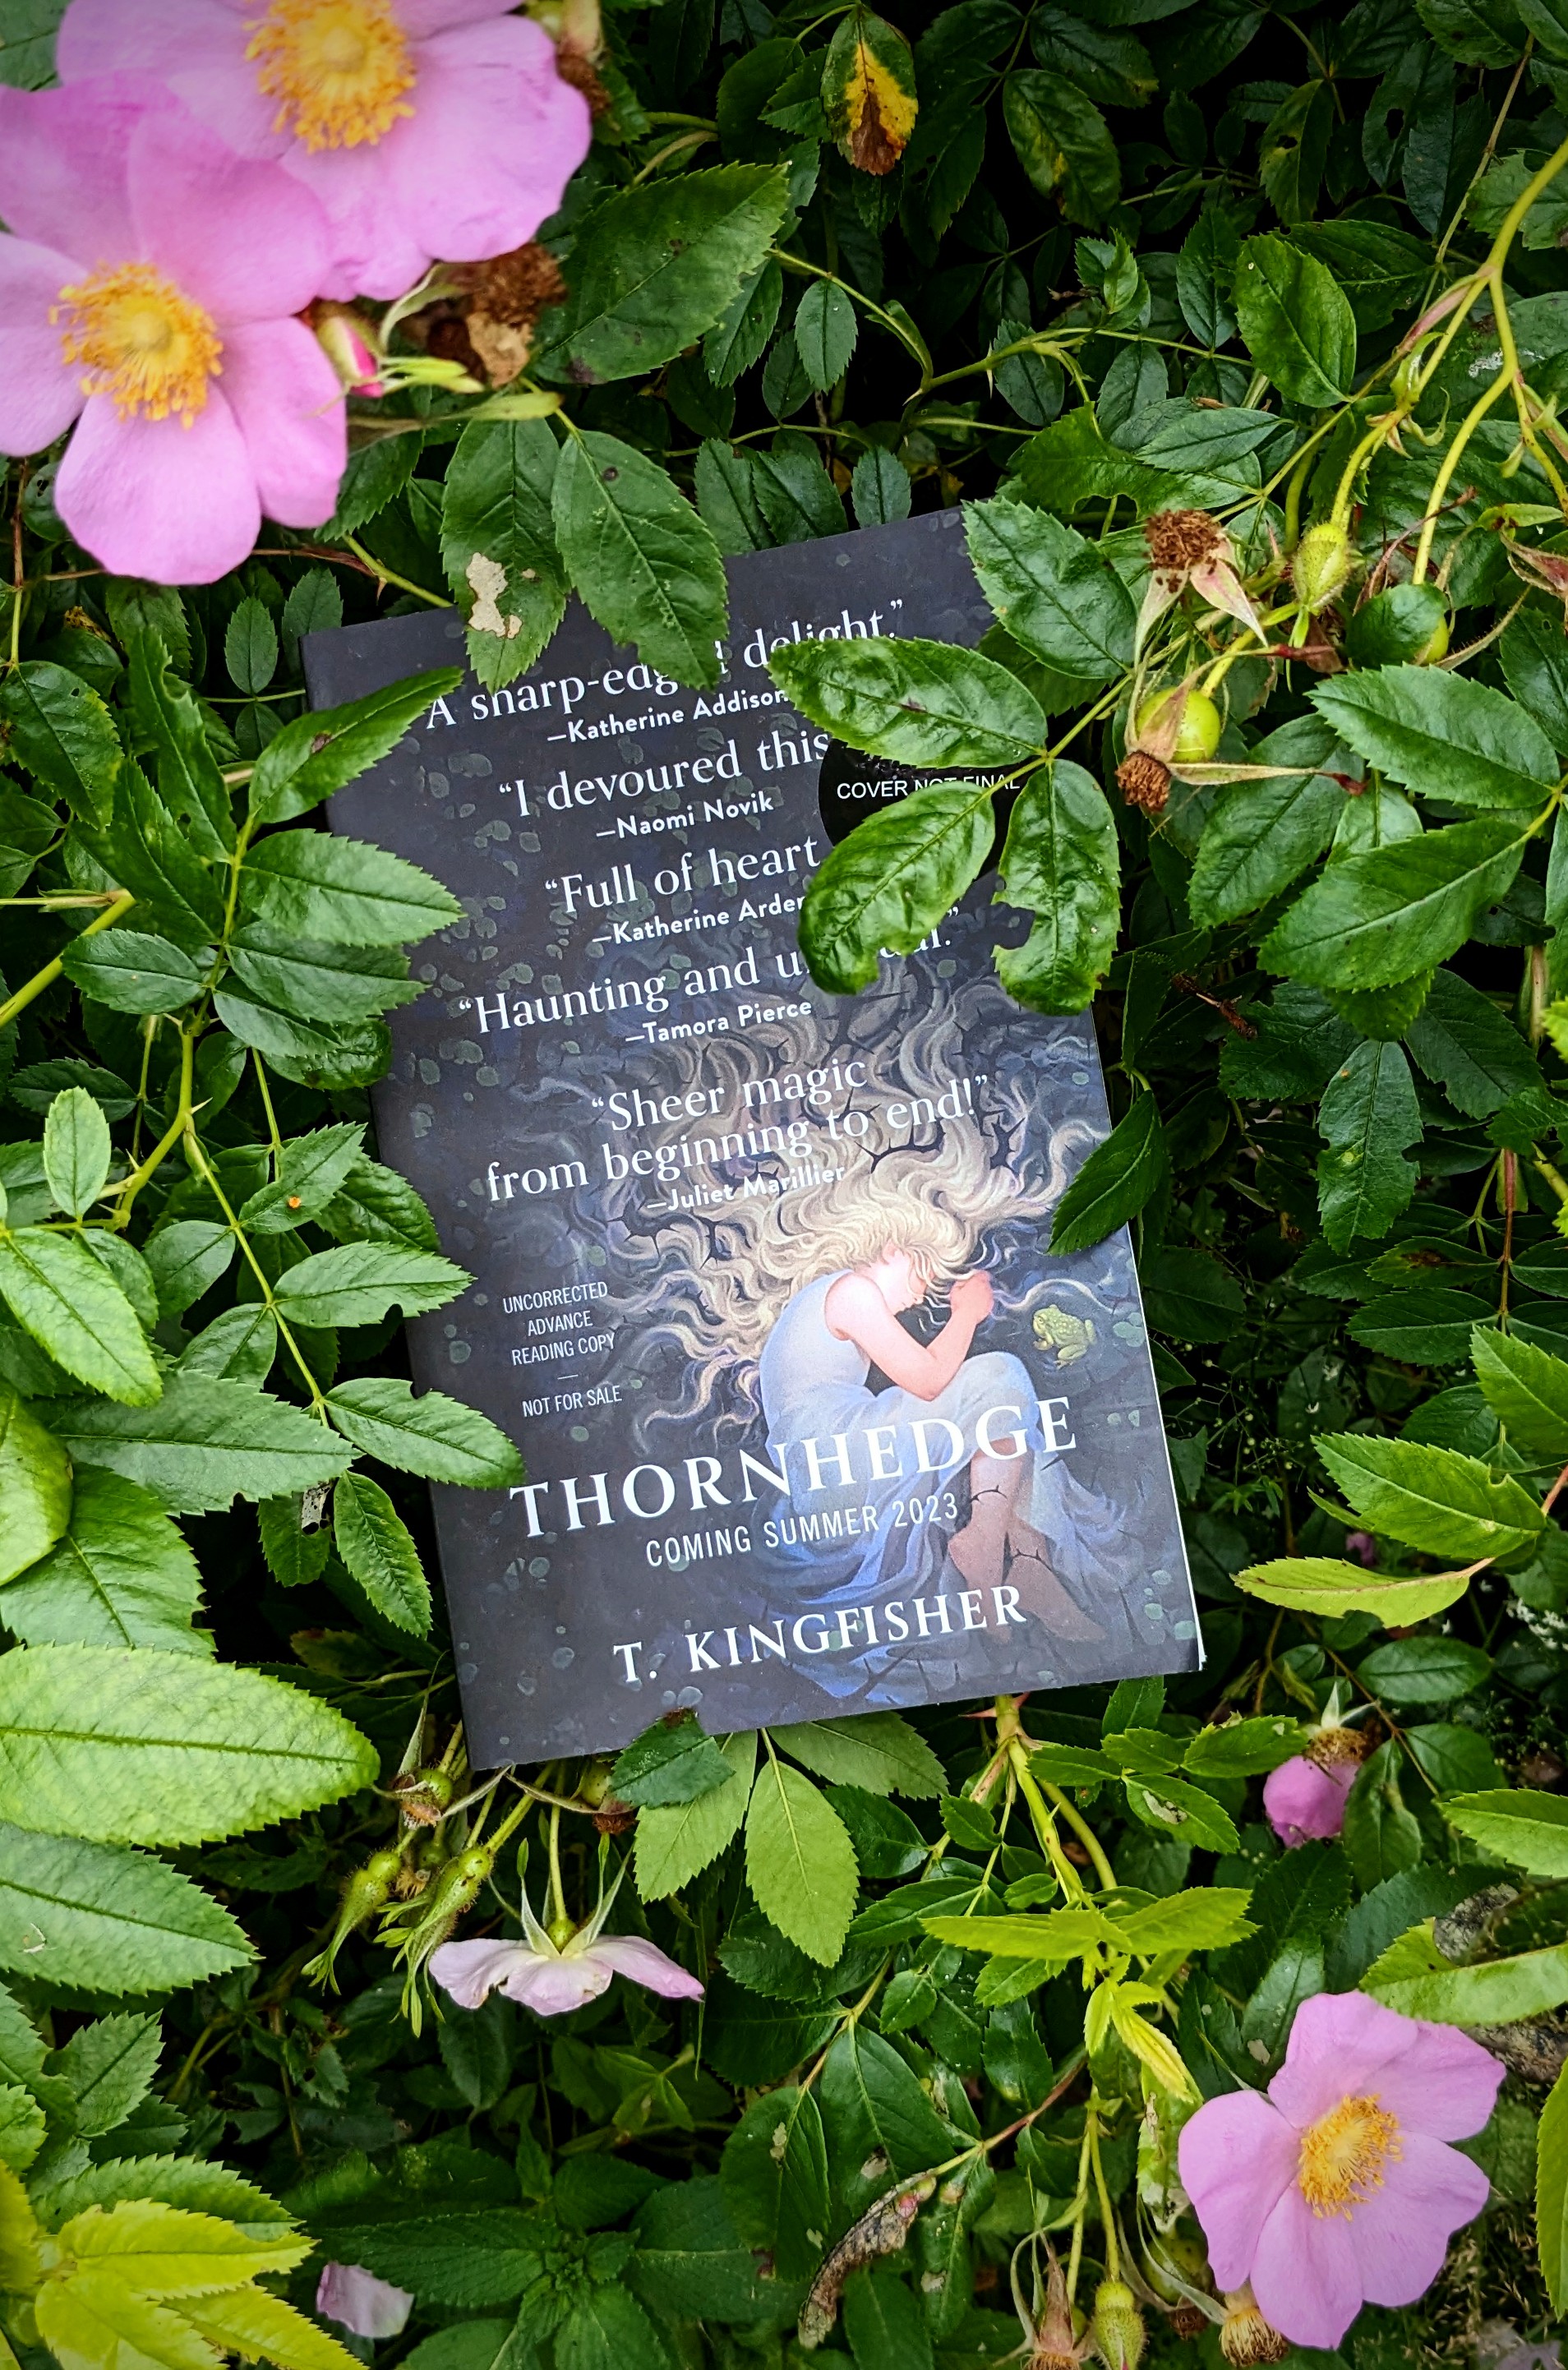 A book tucked into a wild rose bush.